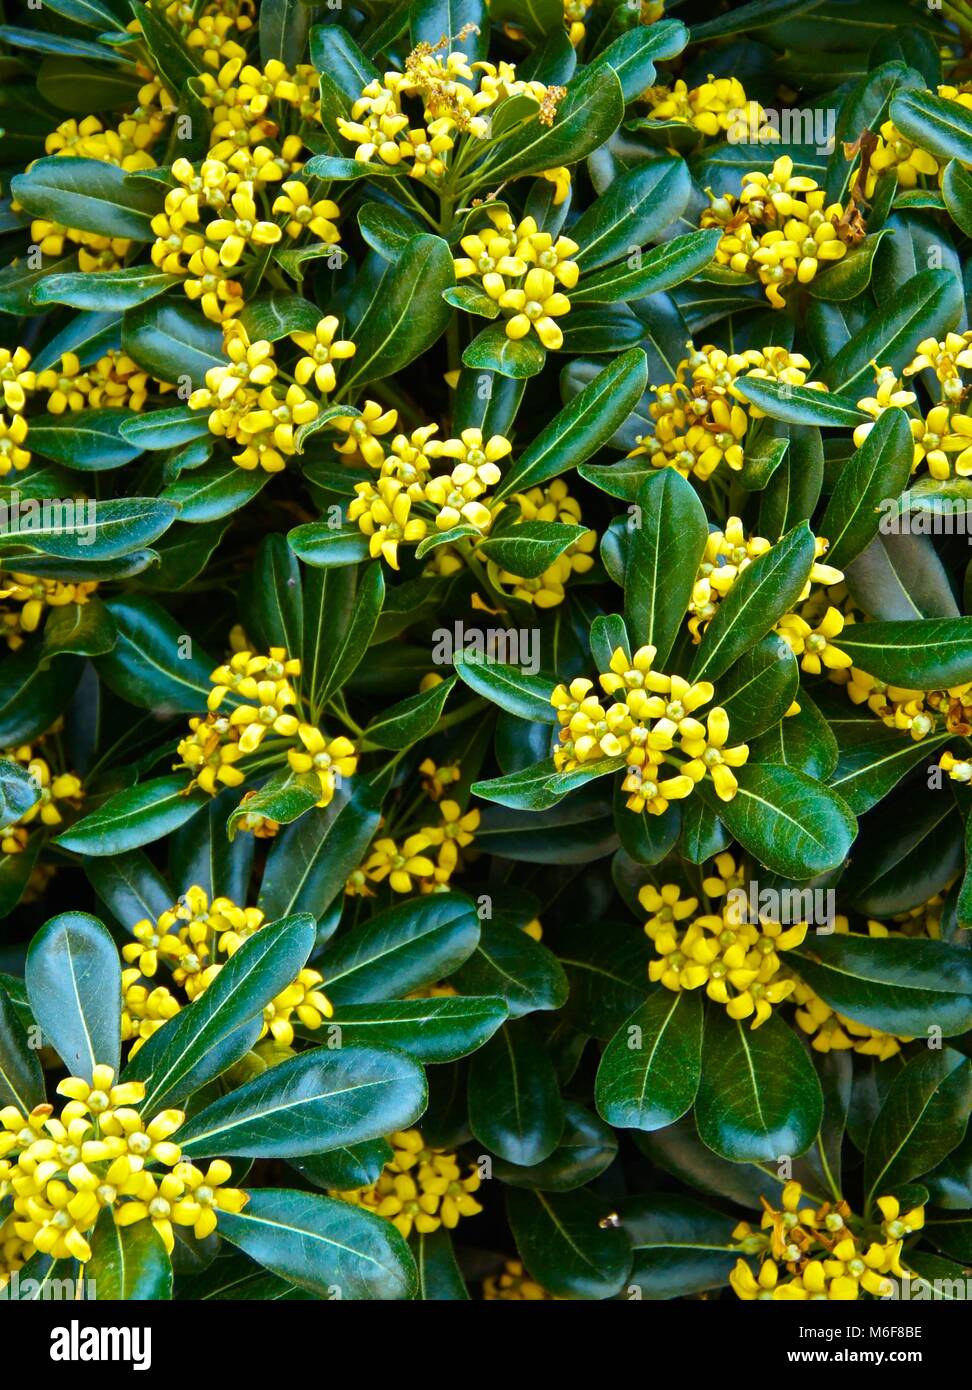 Di colore giallo brillante petali di fiori sul rivestimento parete impianto Foto Stock